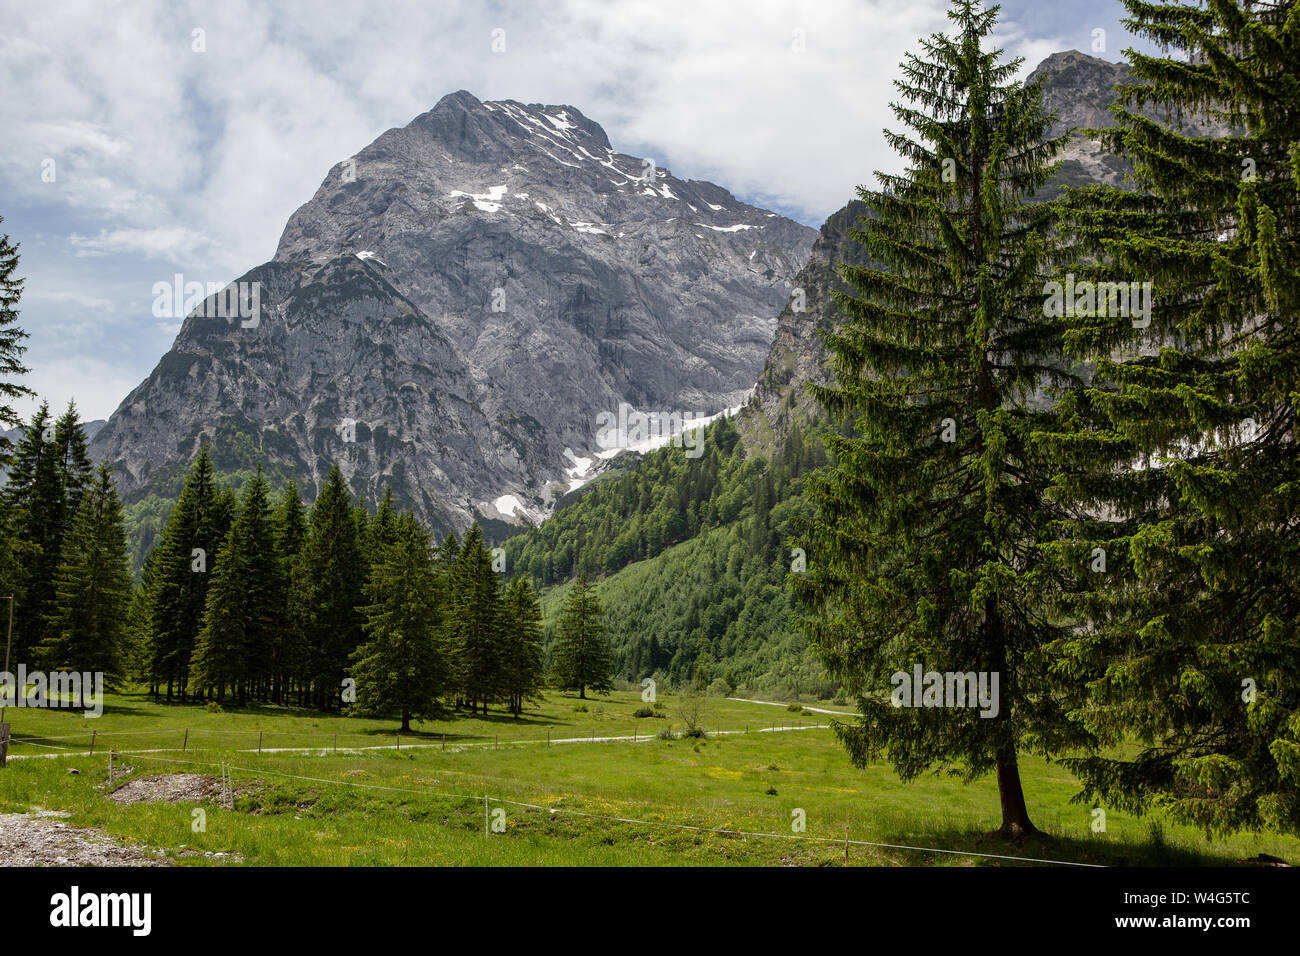 Der pyramidenförmige Sonnjoch im Naturpark Karwendel im Falzthurntal in Österreich ist mit 2457 Metern der höchste Berg der Region Achensee. Stock Photo